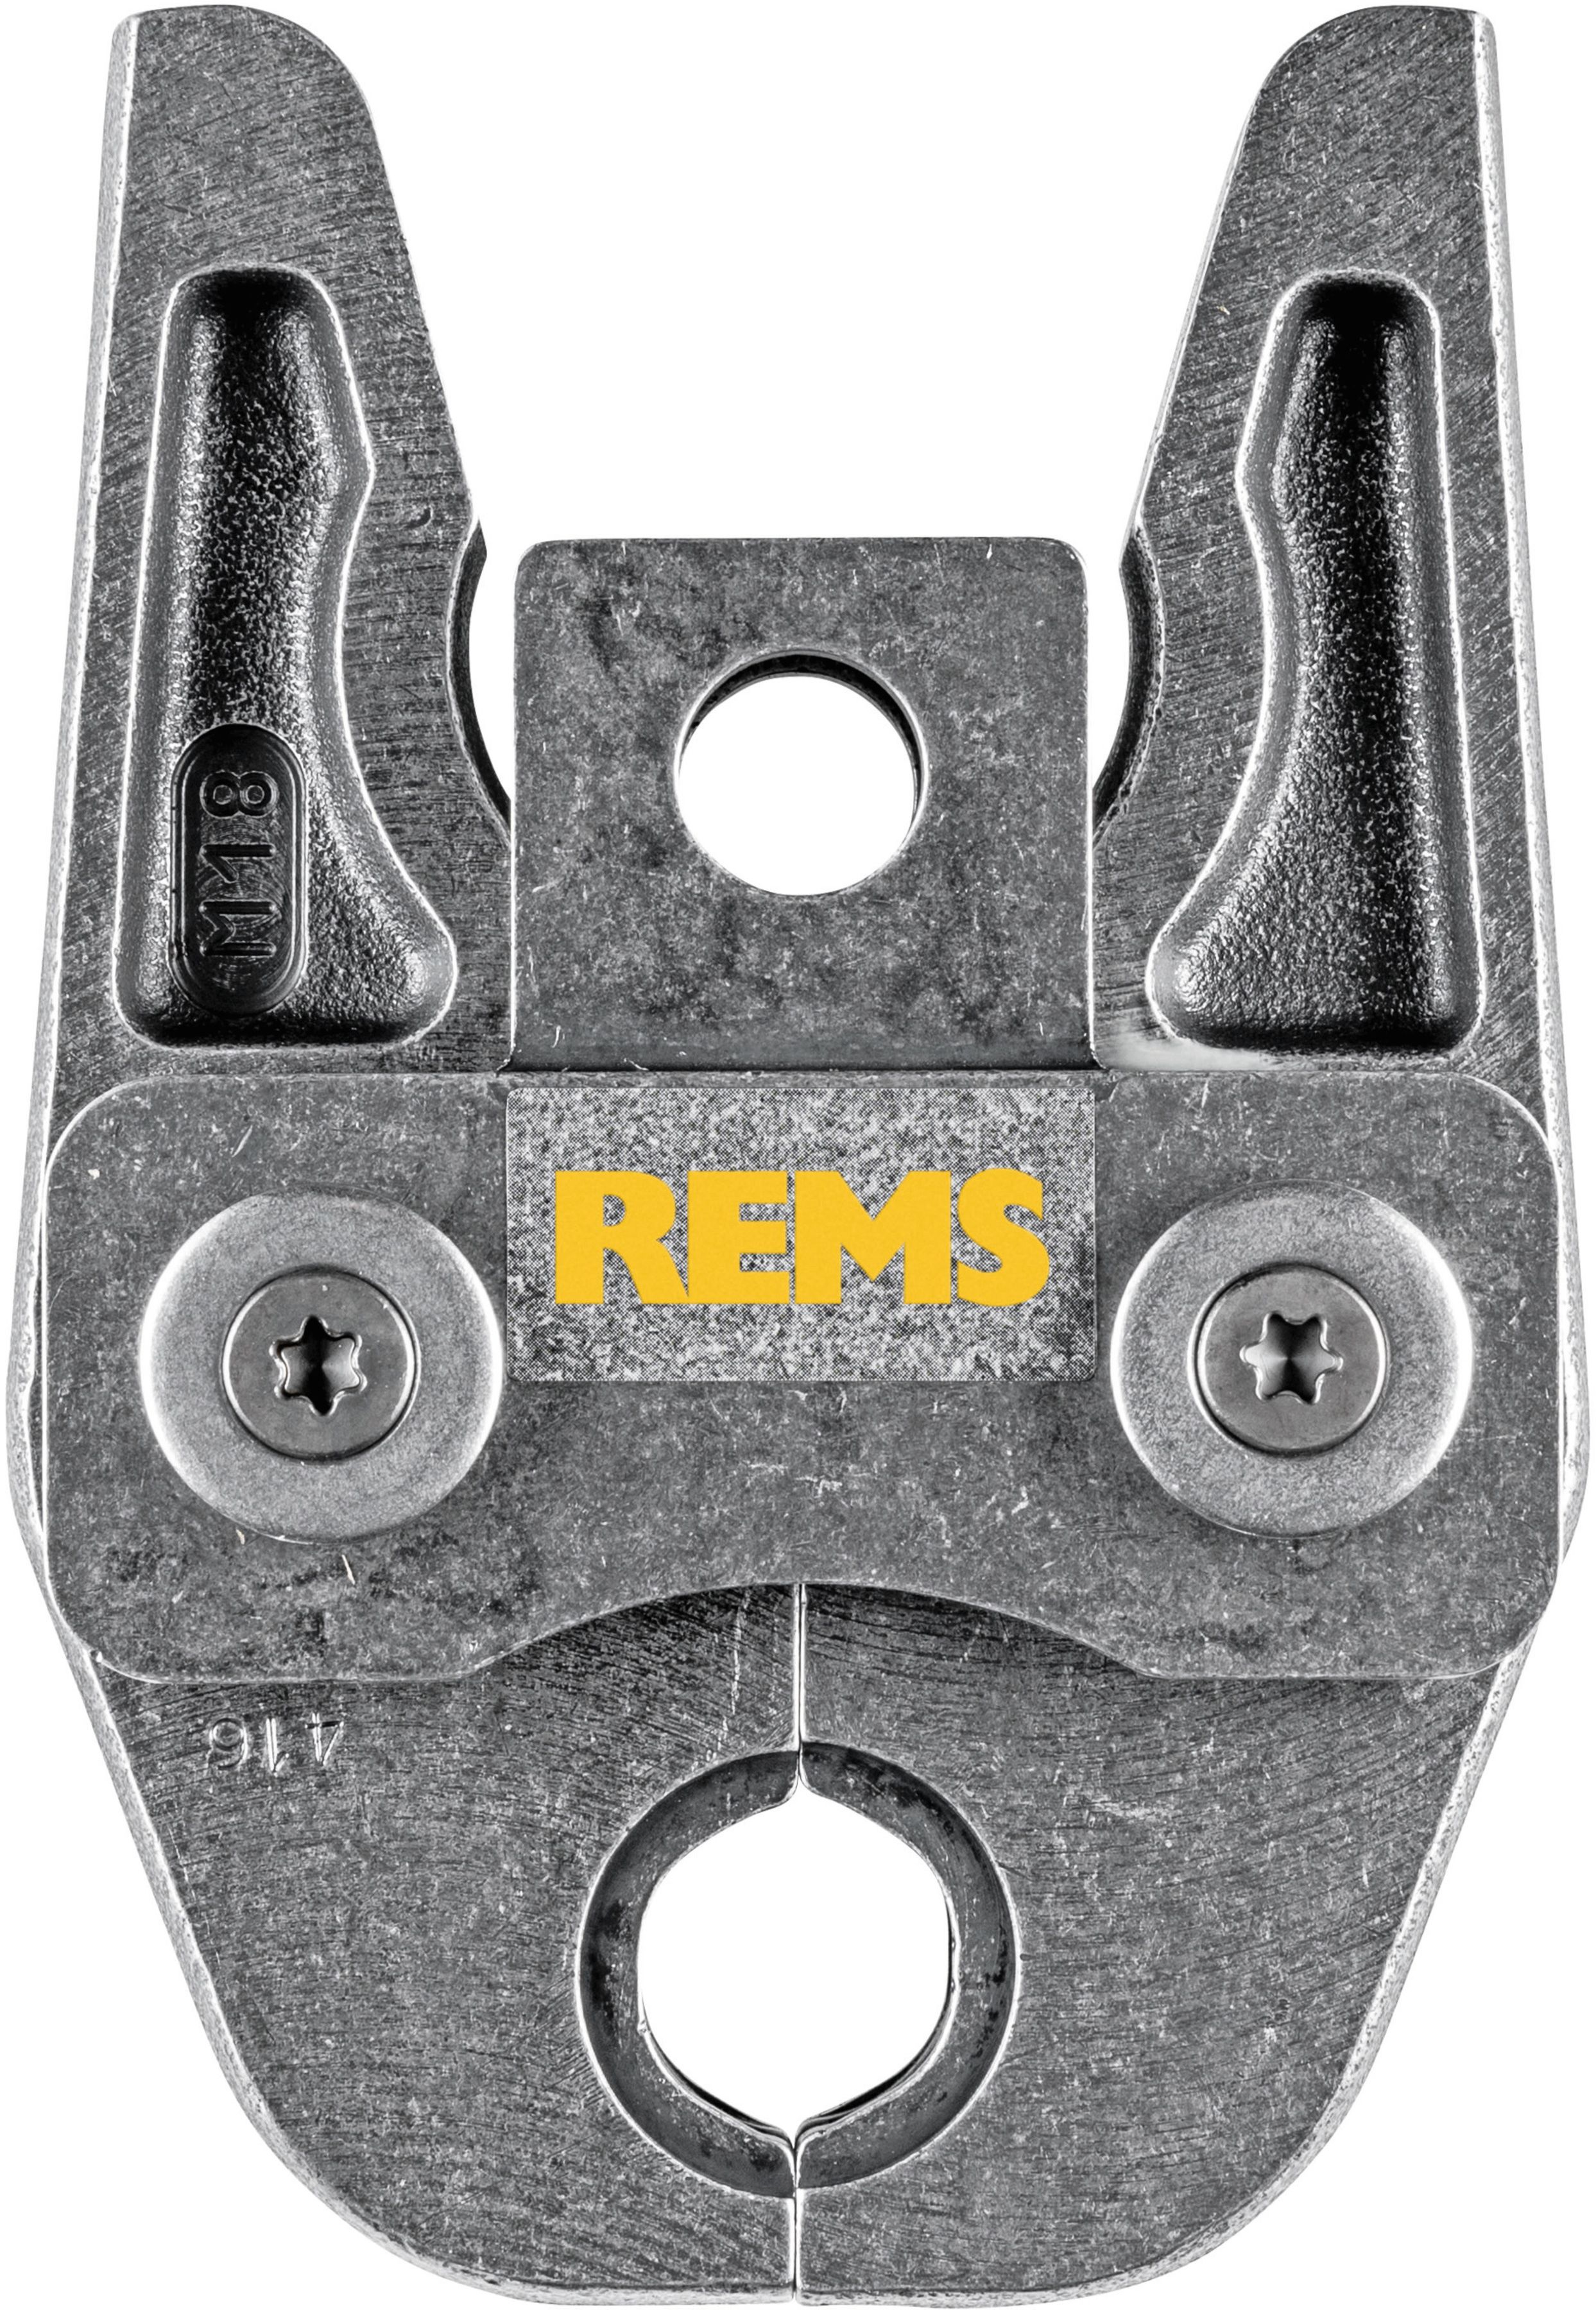 REMS Presszange 570140, M28 - Sanitärwerkzeuge